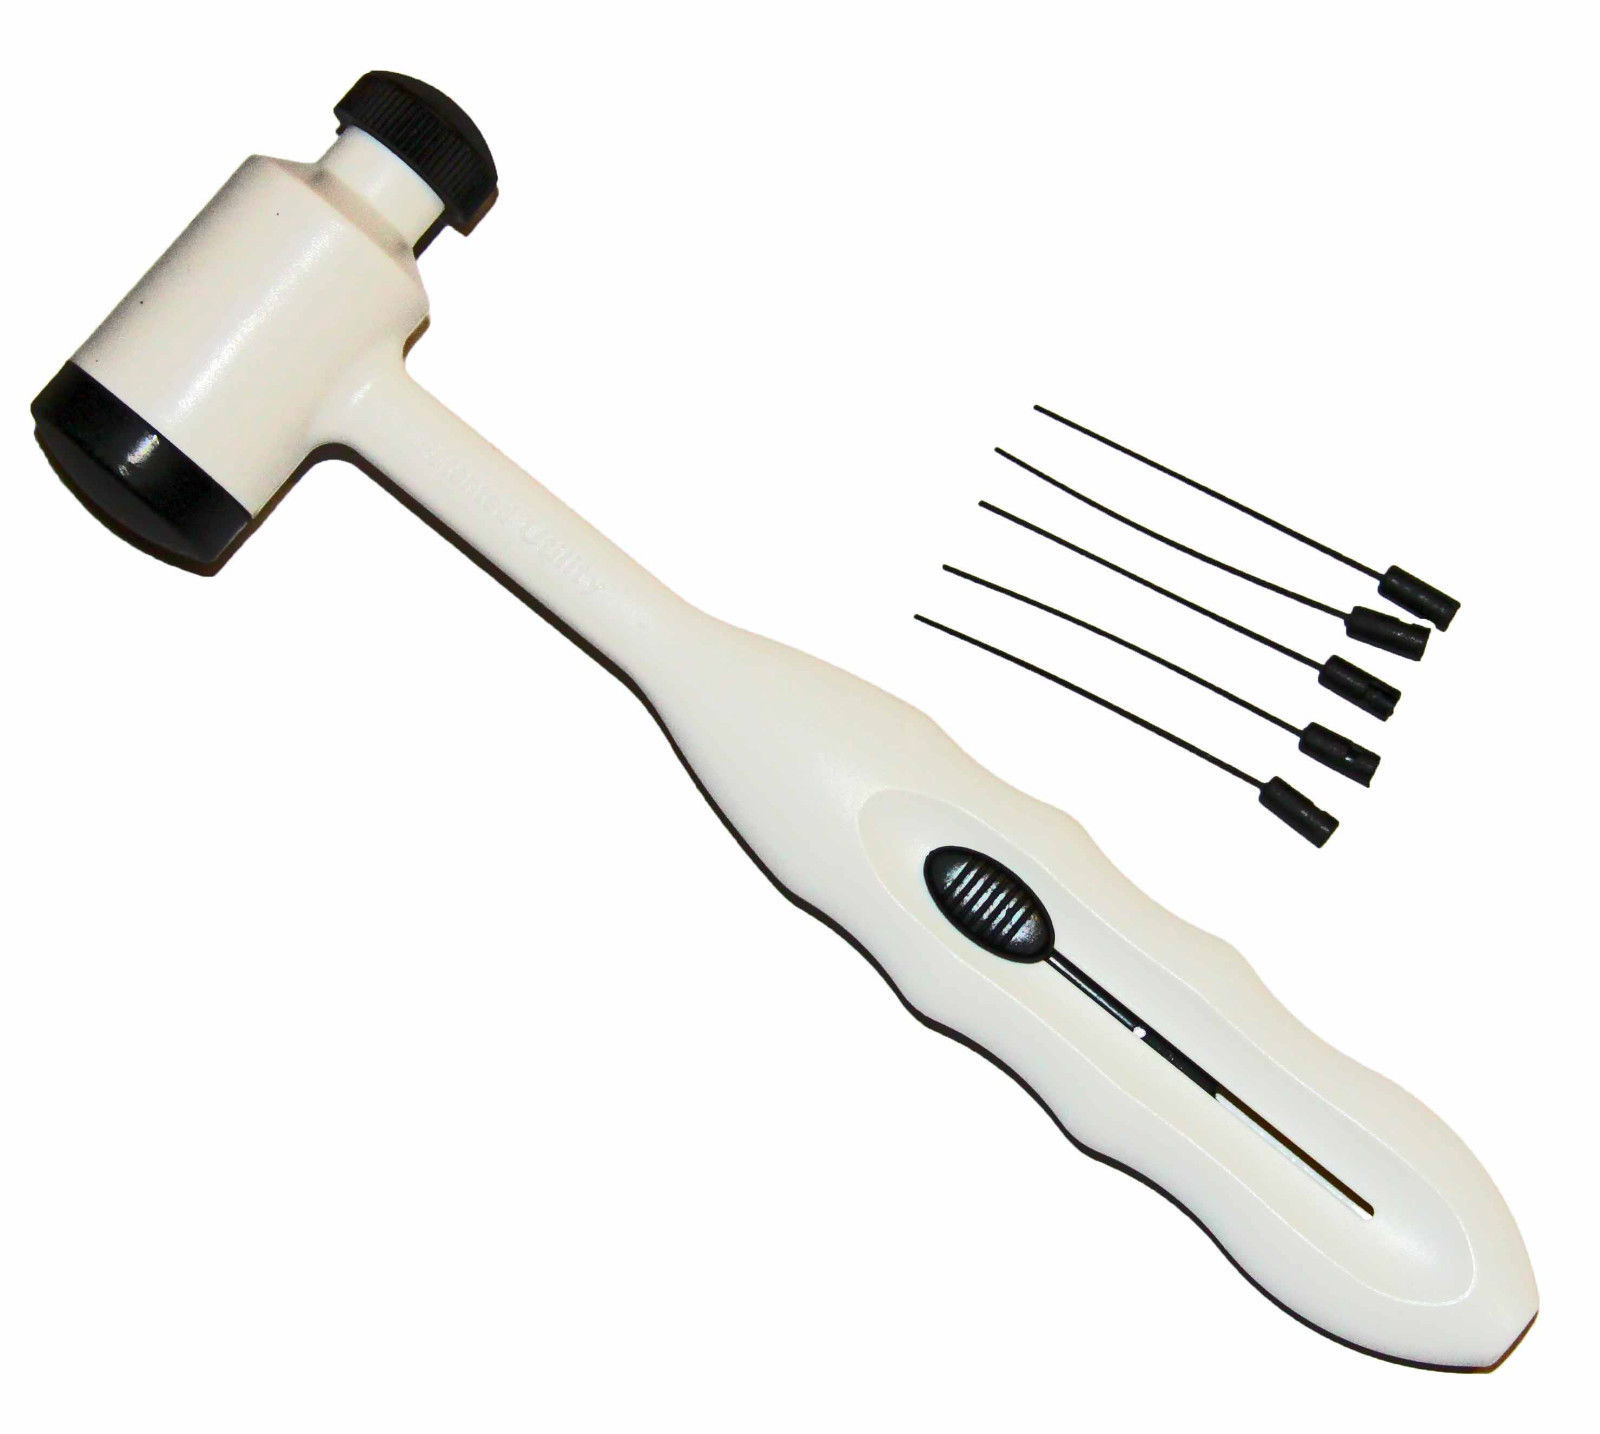 NEW Reflex Hammer With Neurological Filament - $6.79